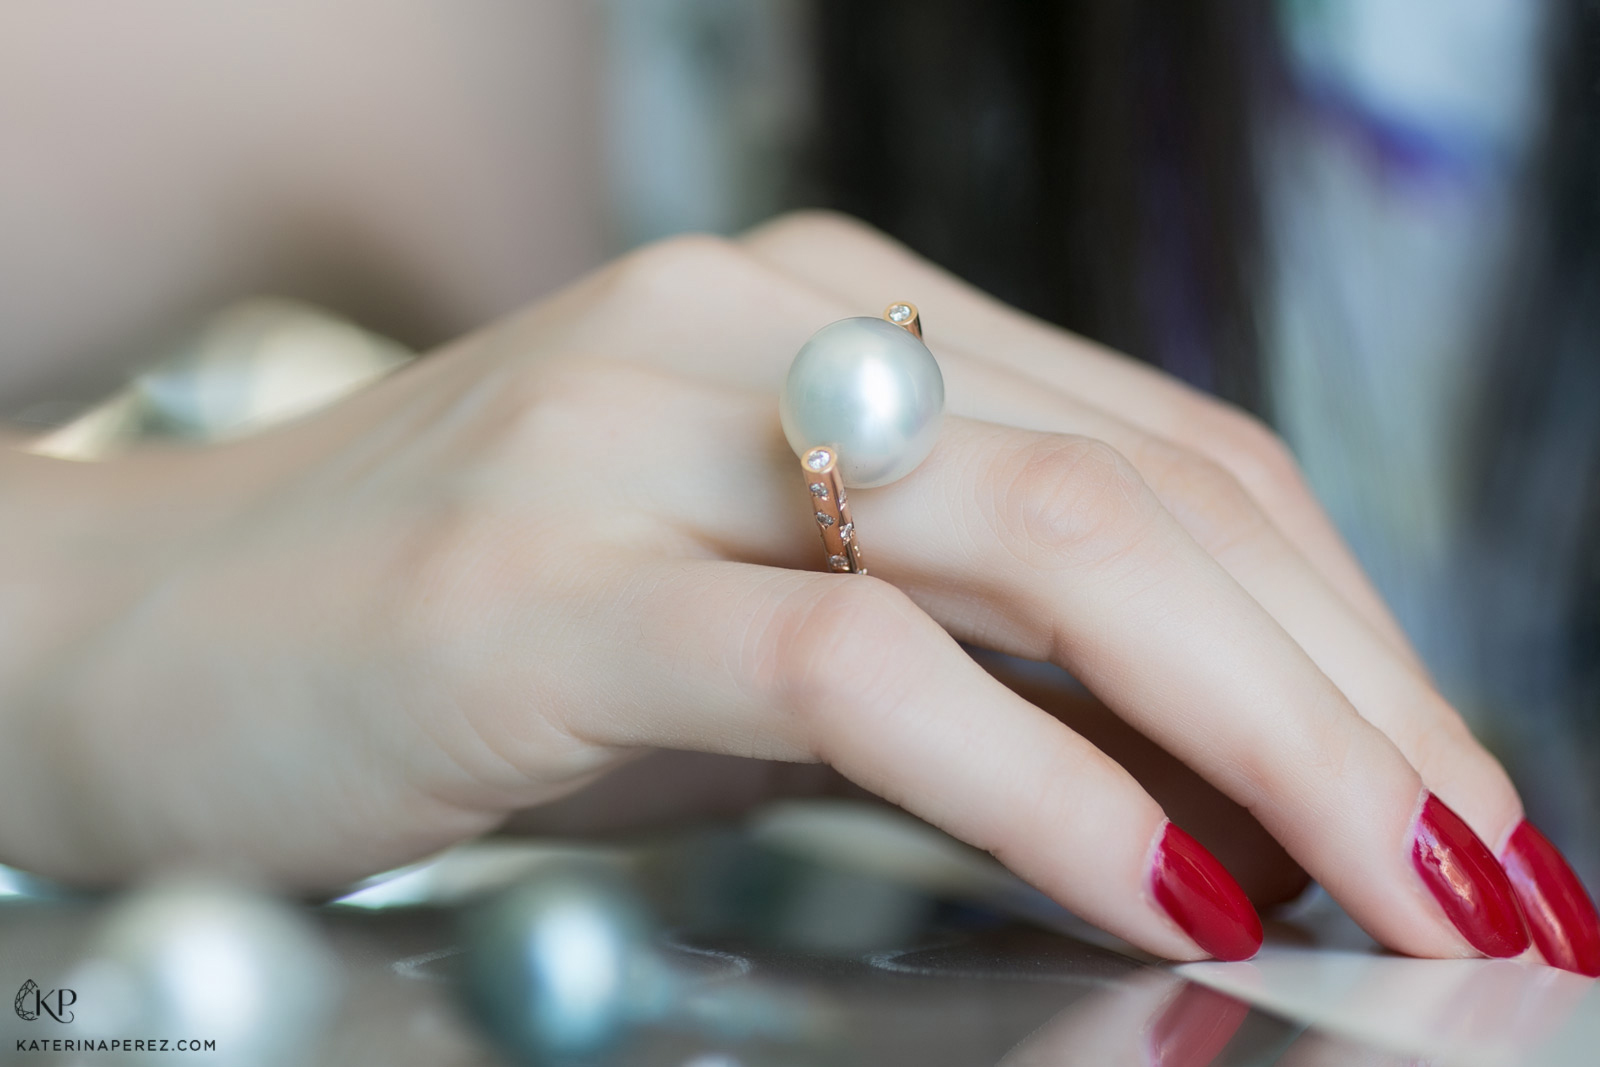 Великолепное кольцо Planete от Julie Genet с белоснежной австралийской жемчужиной